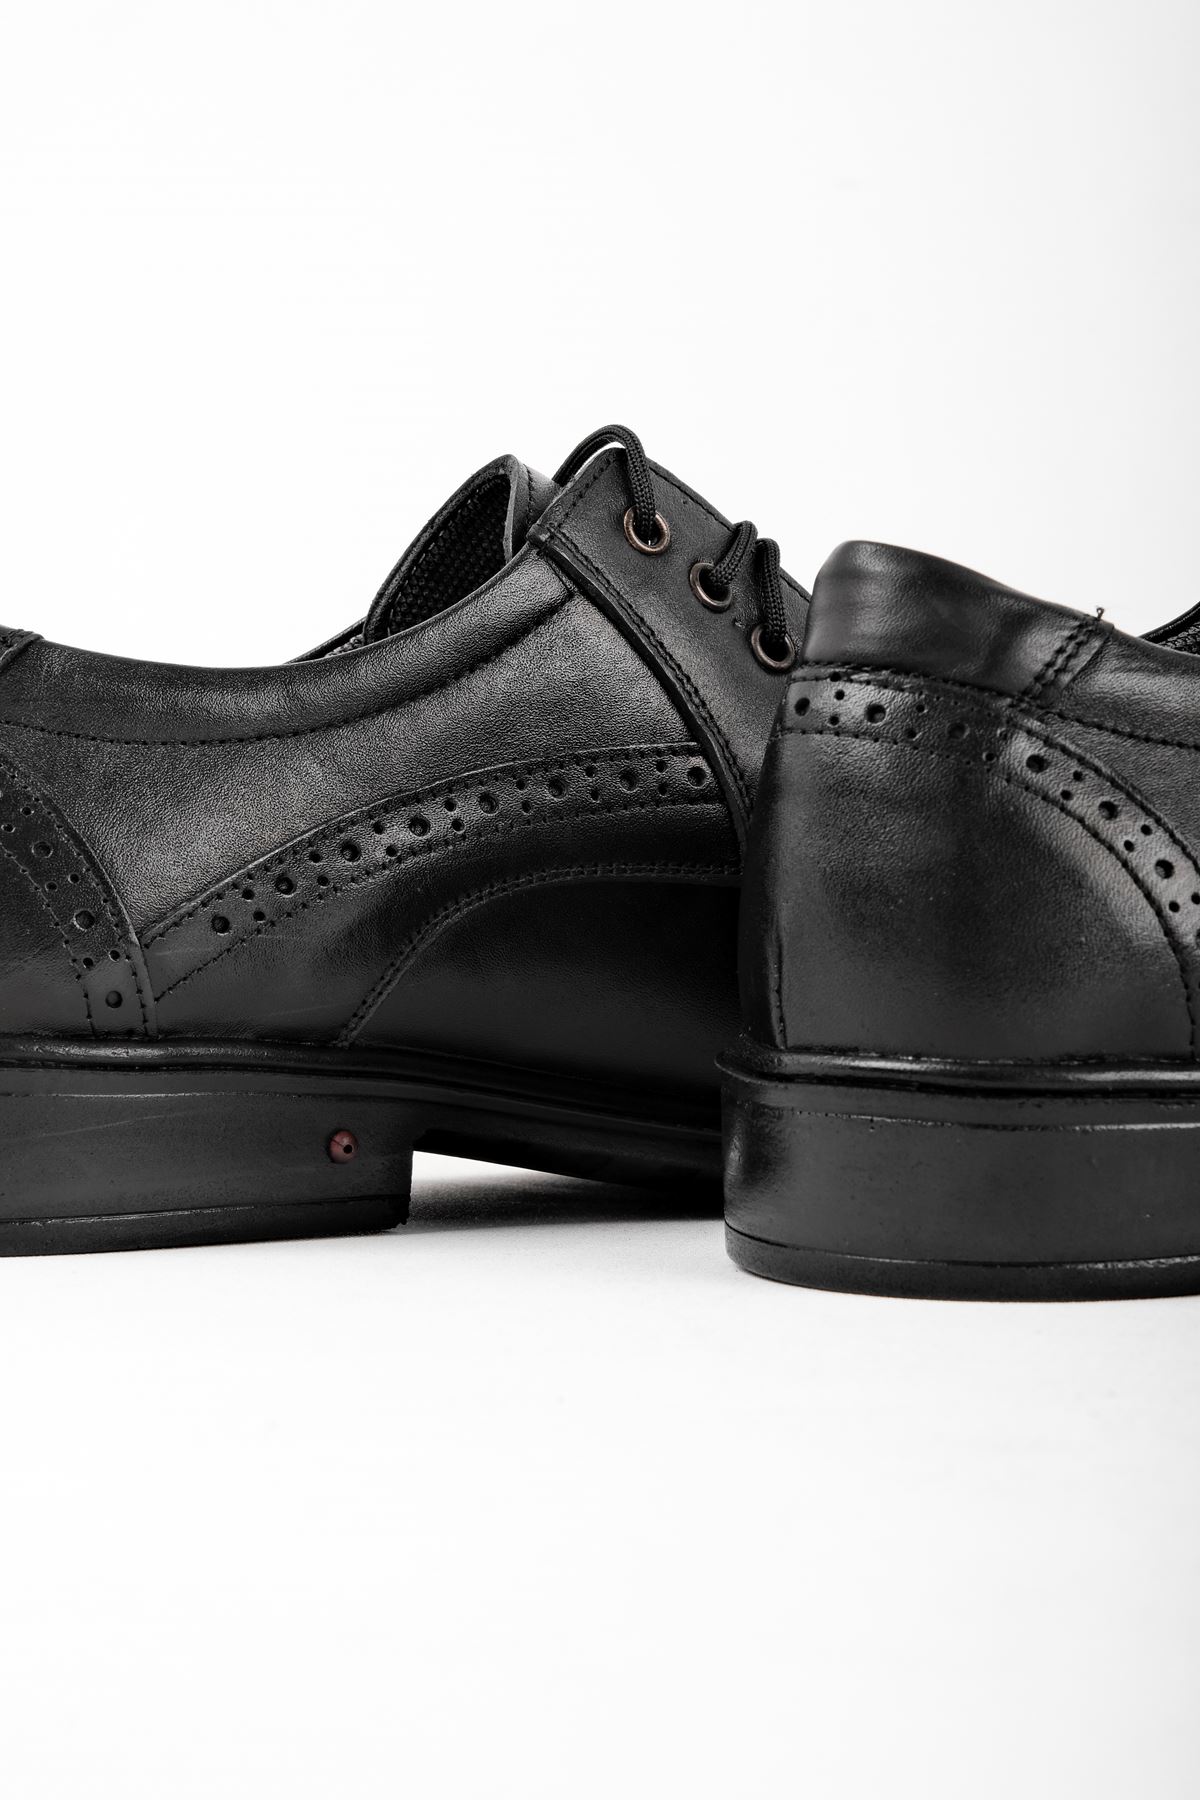 Vitela Erkek Hakiki Deri Ayakkabı Klasik-siyah